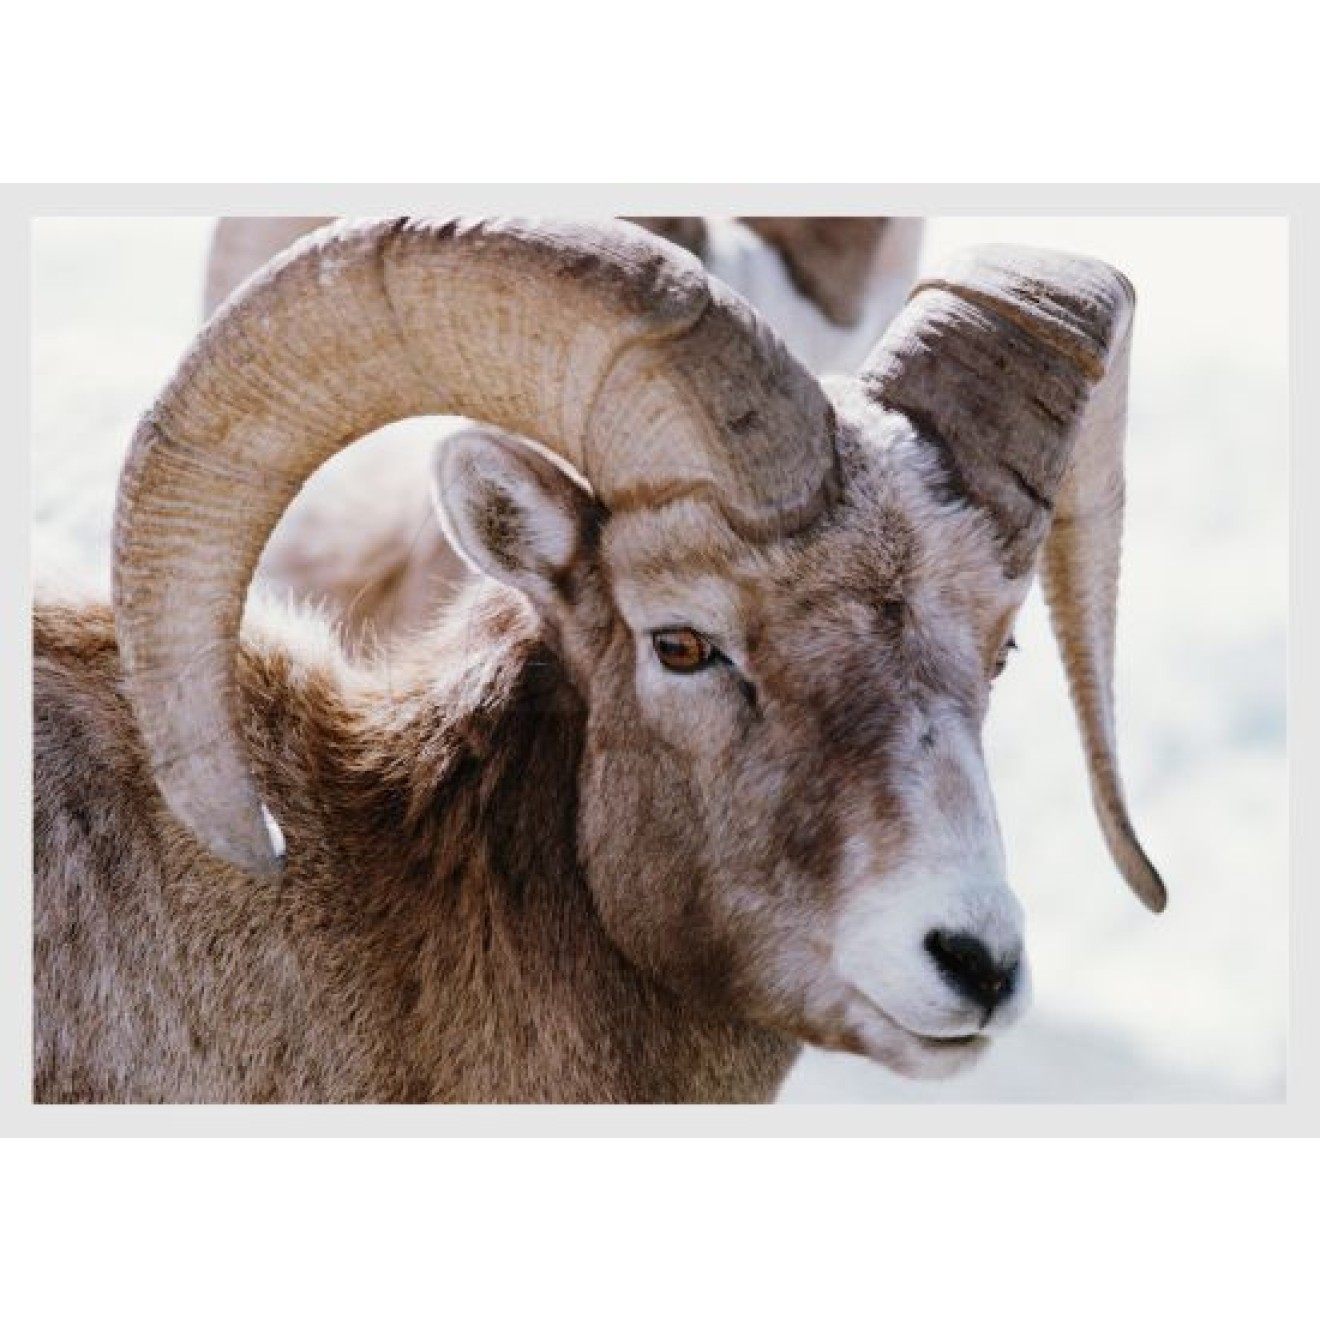 Mouflon buck